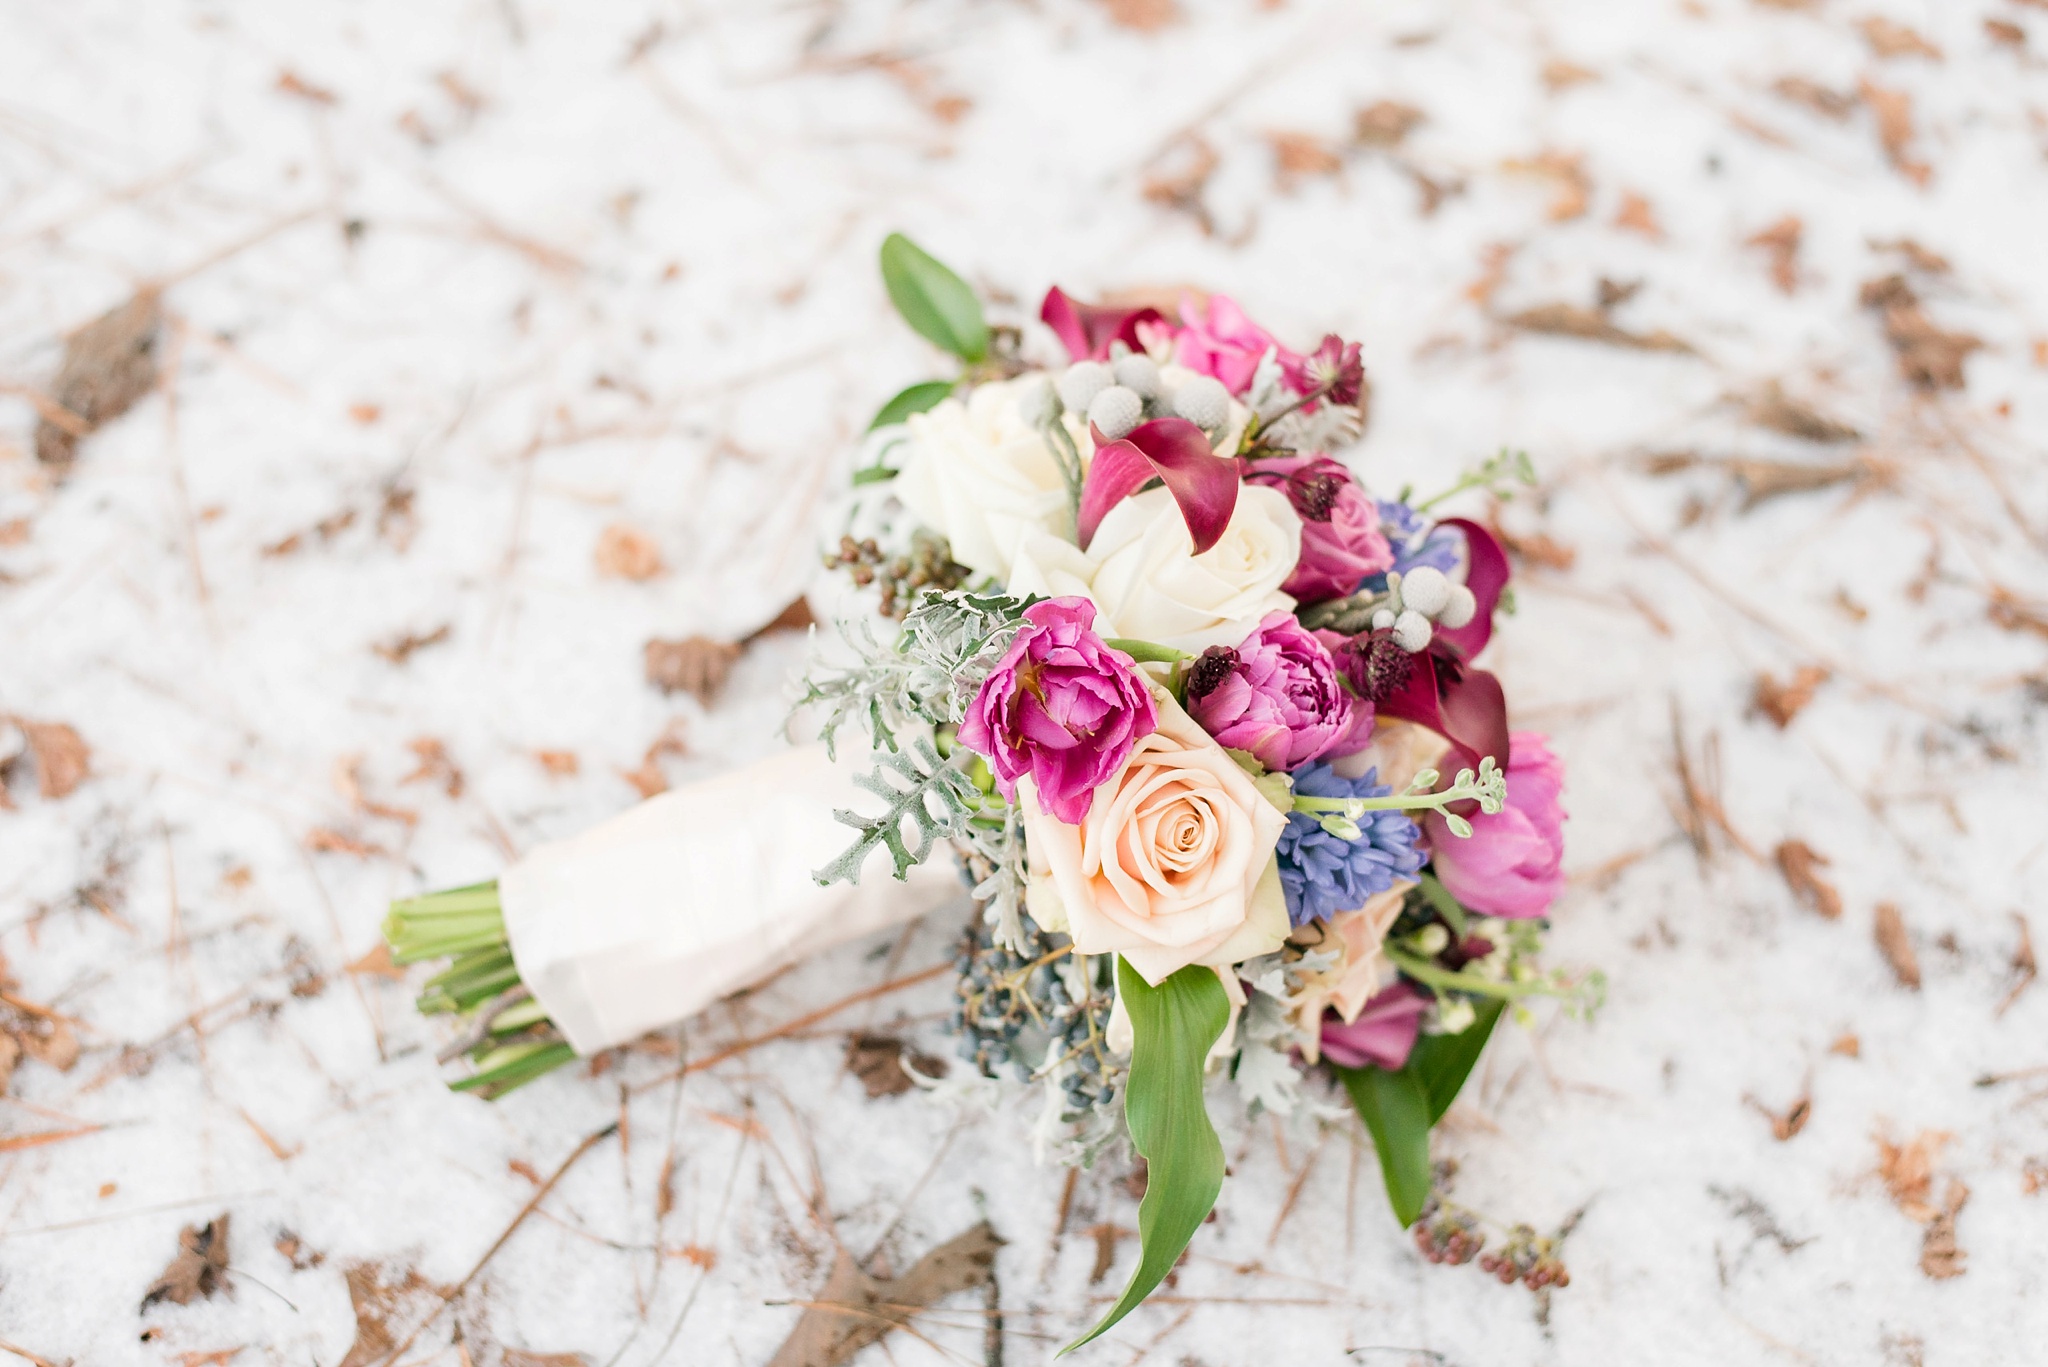 Snowy Winter Aldridge Gardens Wedding | Birmingham Alabama Wedding Photographers_0038.jpg